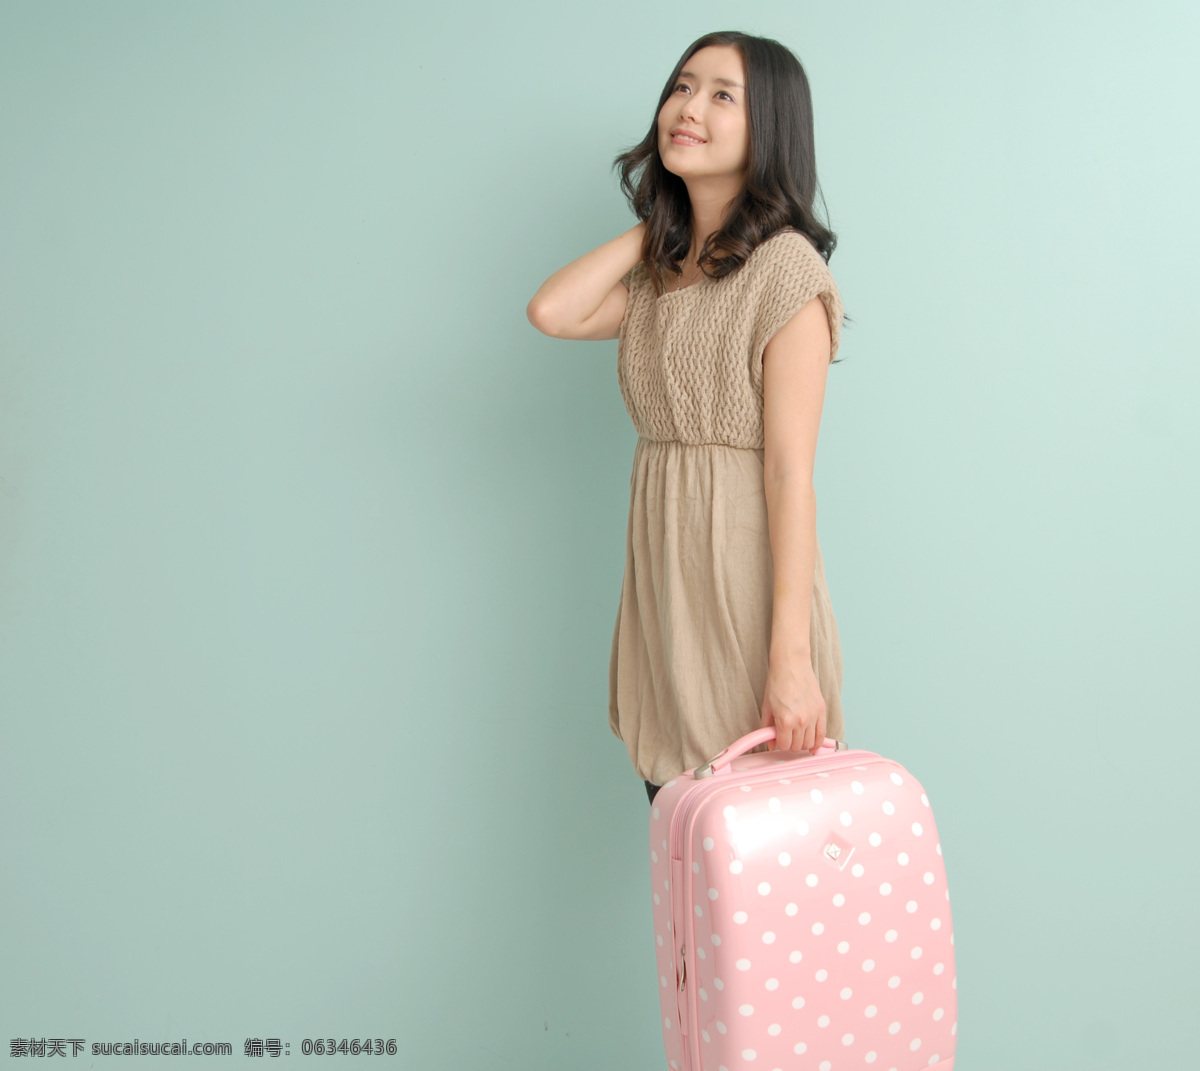 韩国 旅行箱 美女模特 图 美女 模特 女性女人 人物图库